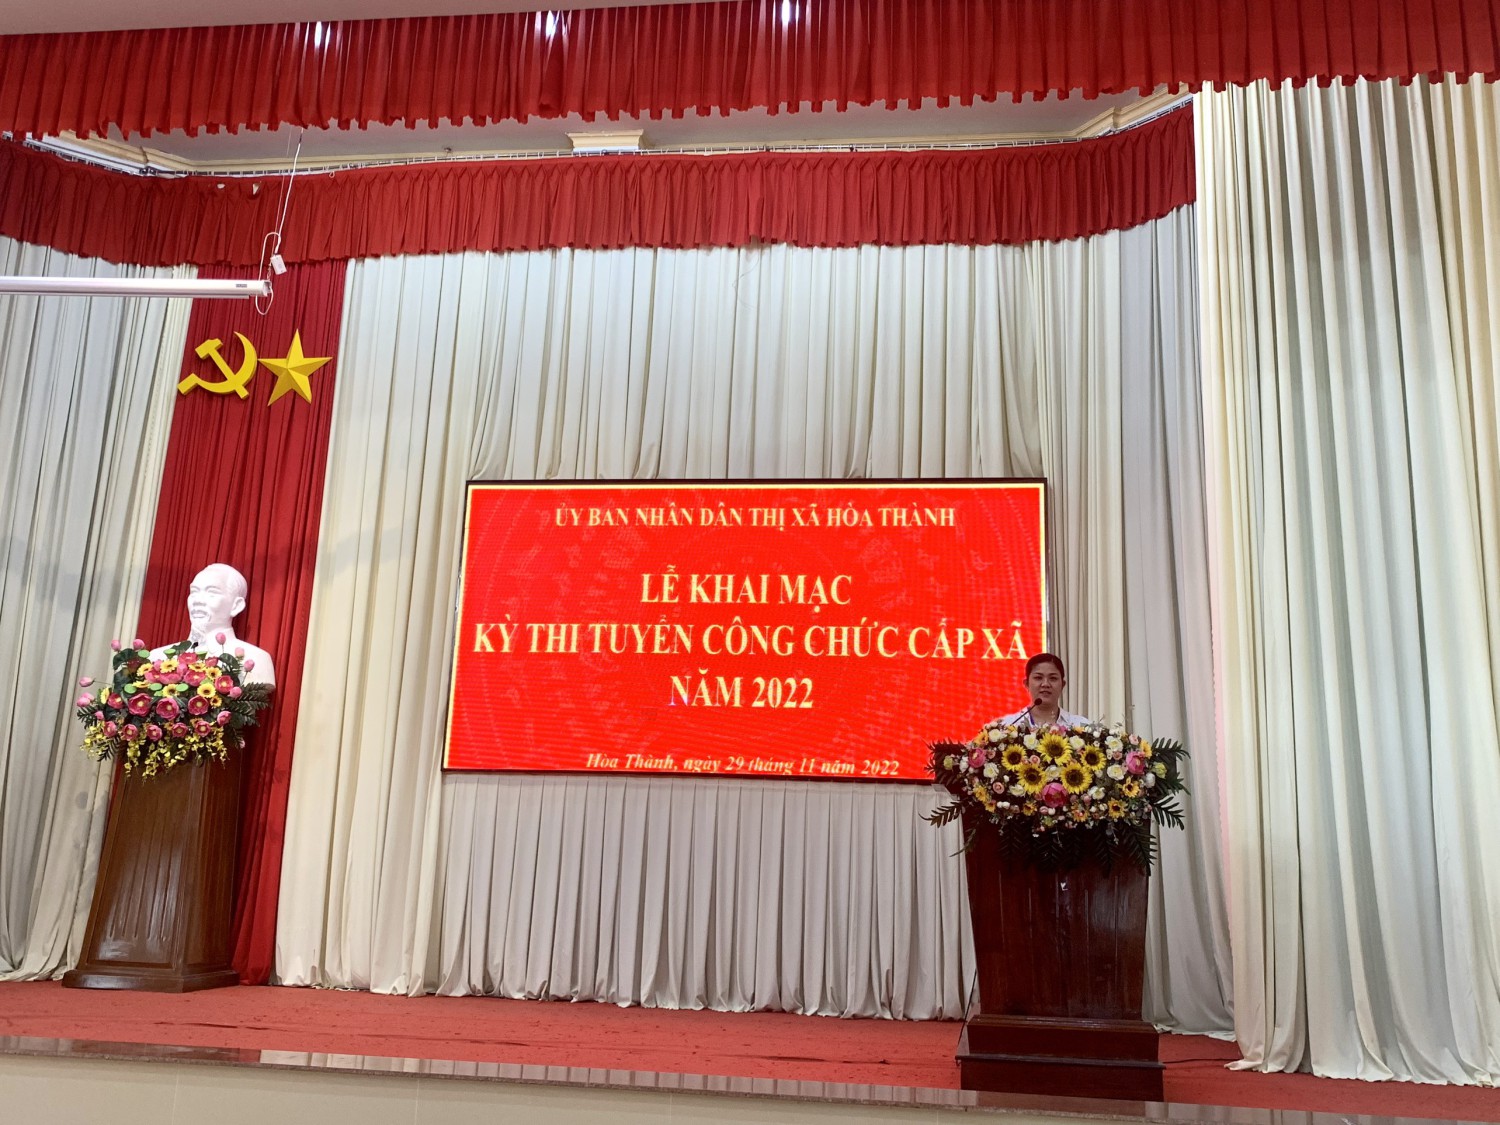 Ủy ban nhân dân thị xã Hòa Thành tổ chức lễ khai mạc kỳ thi tuyển công chức cấp xã năm 2022